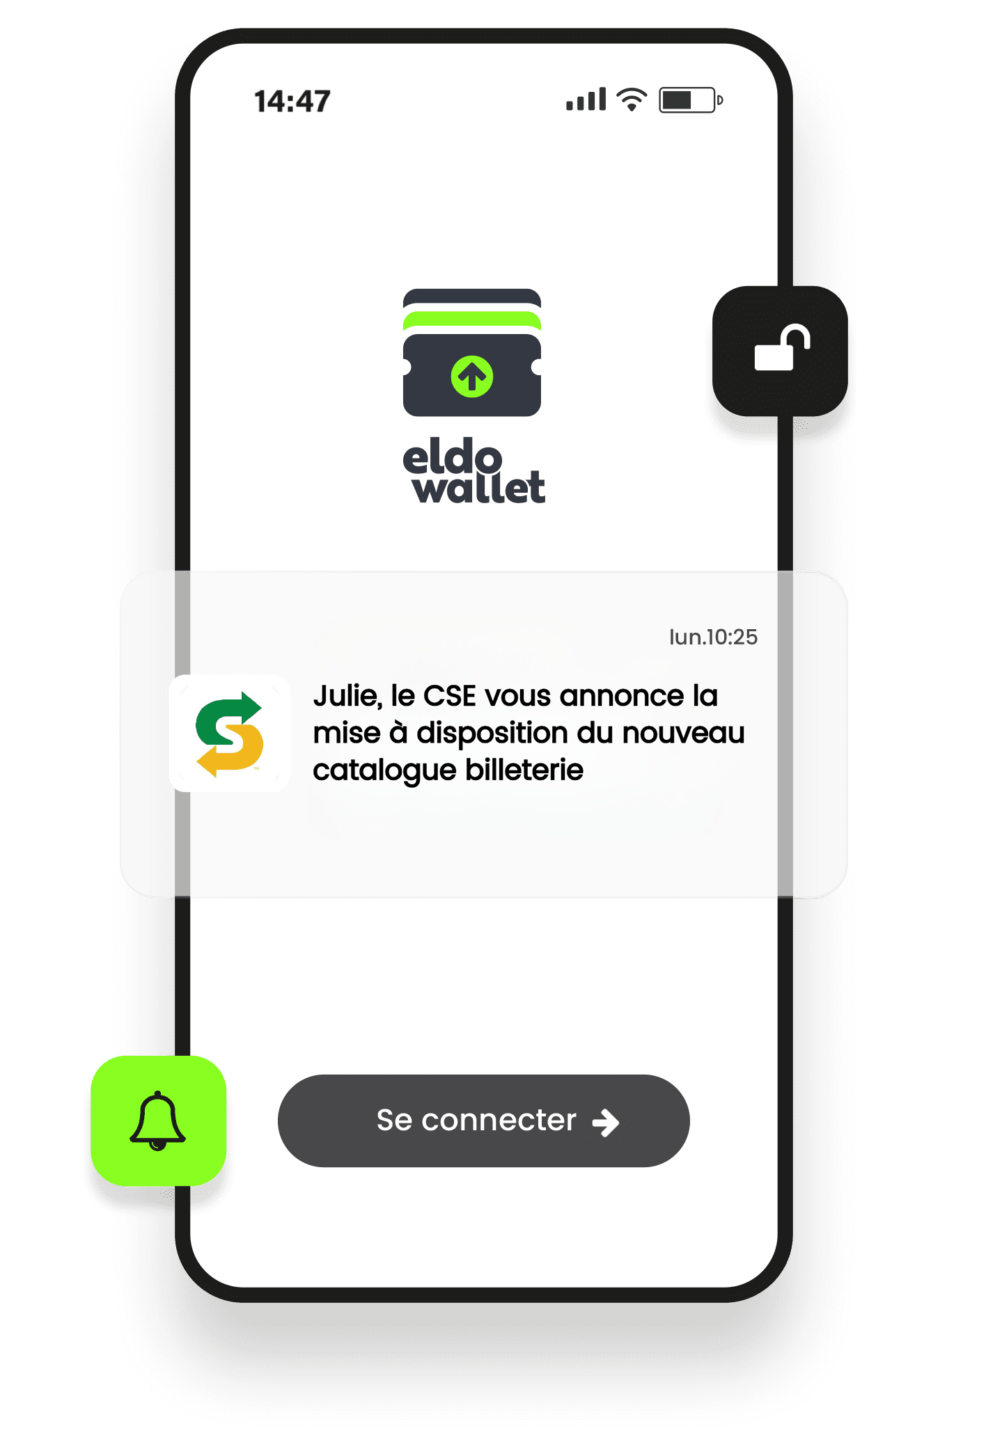 eldo wallet - Plateforme marketing pour le wallet mobile de vos clients